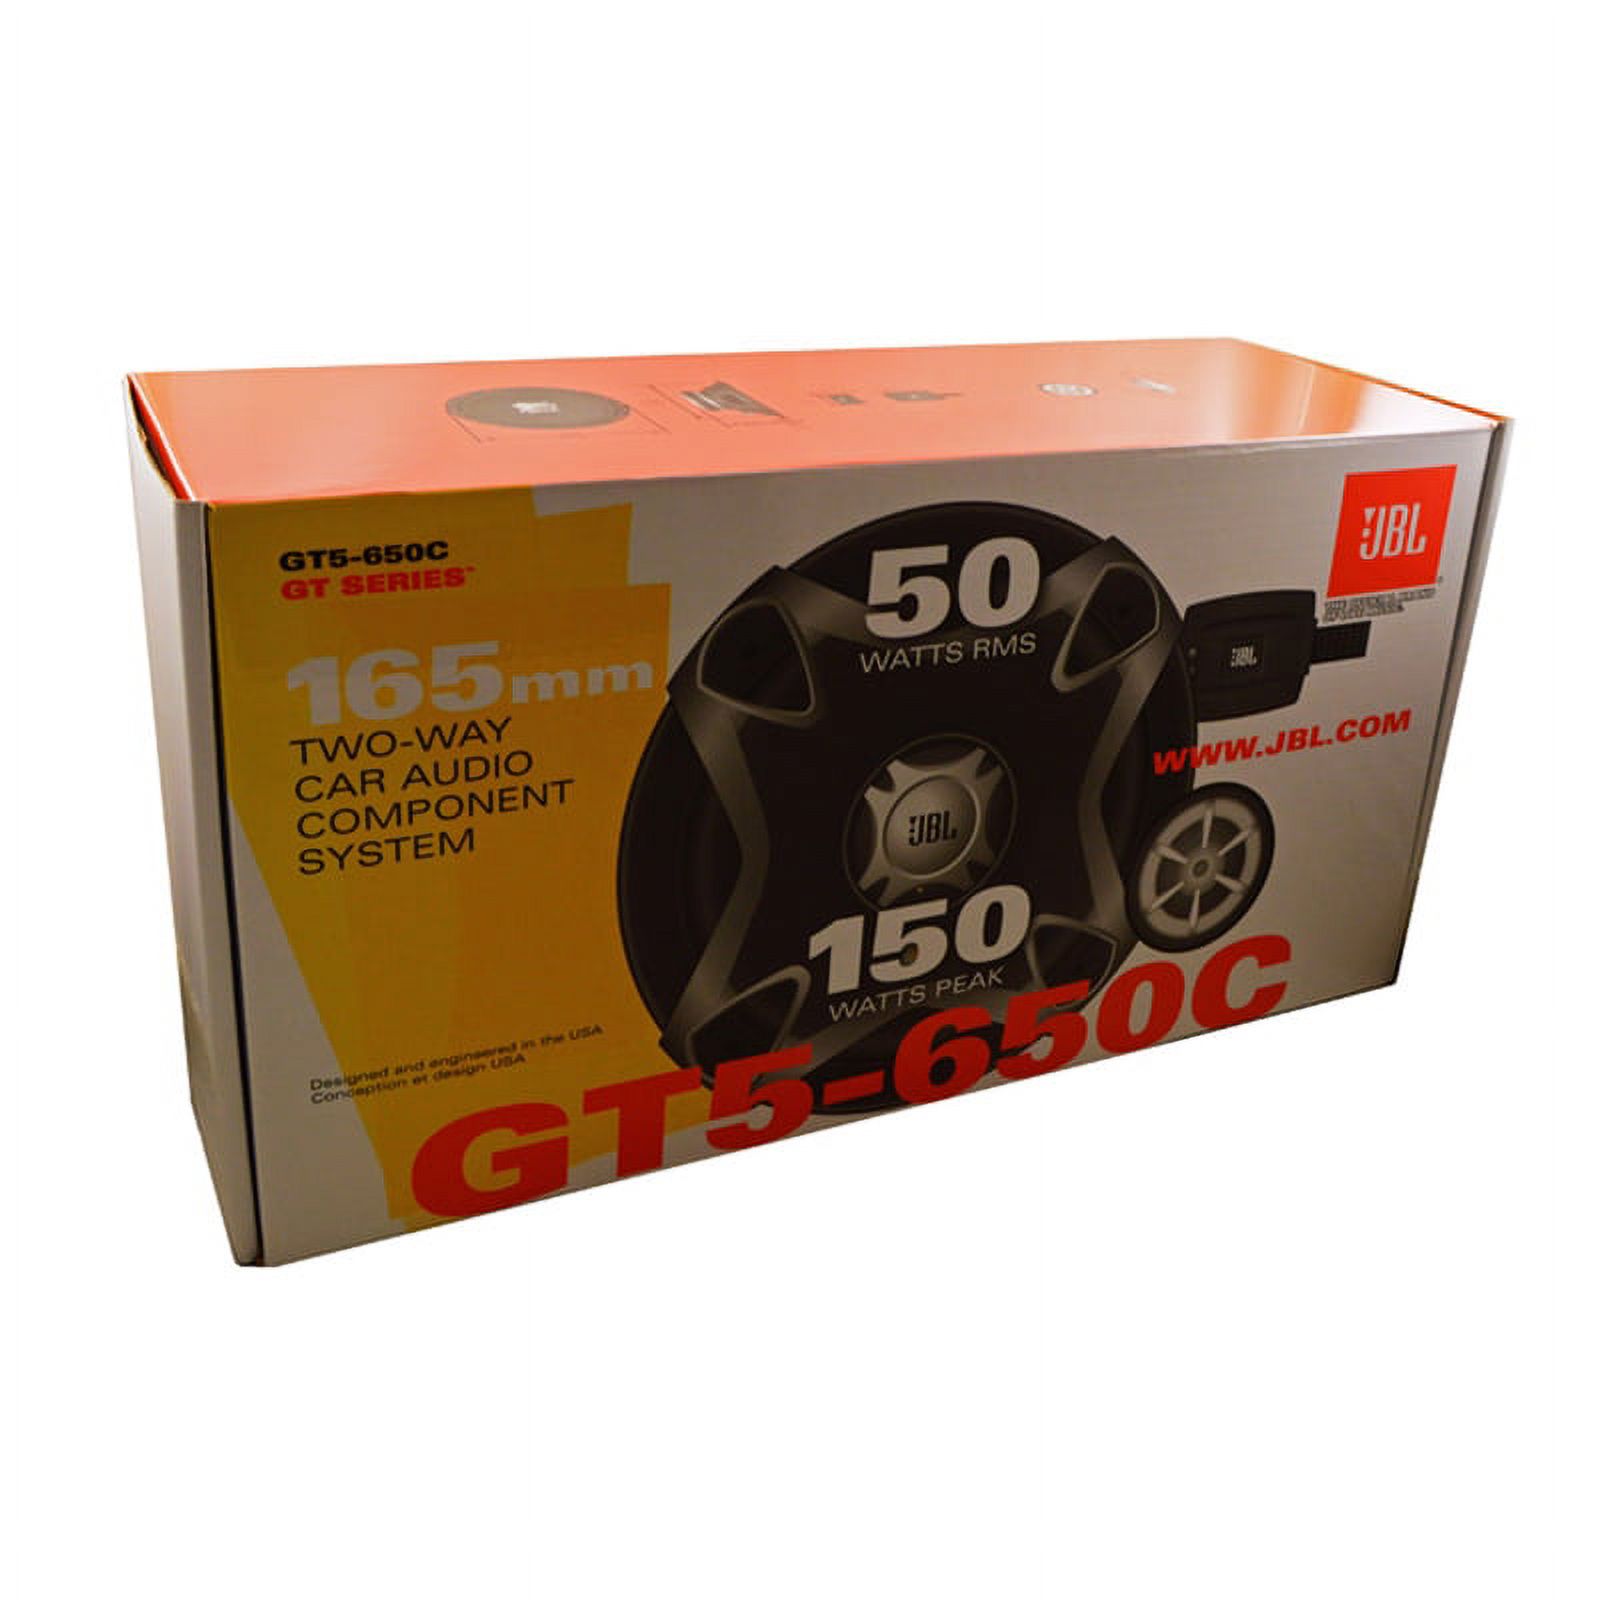 JBL GT5-650C 165mm 2 Way Component Car Speaker System - image 4 of 5